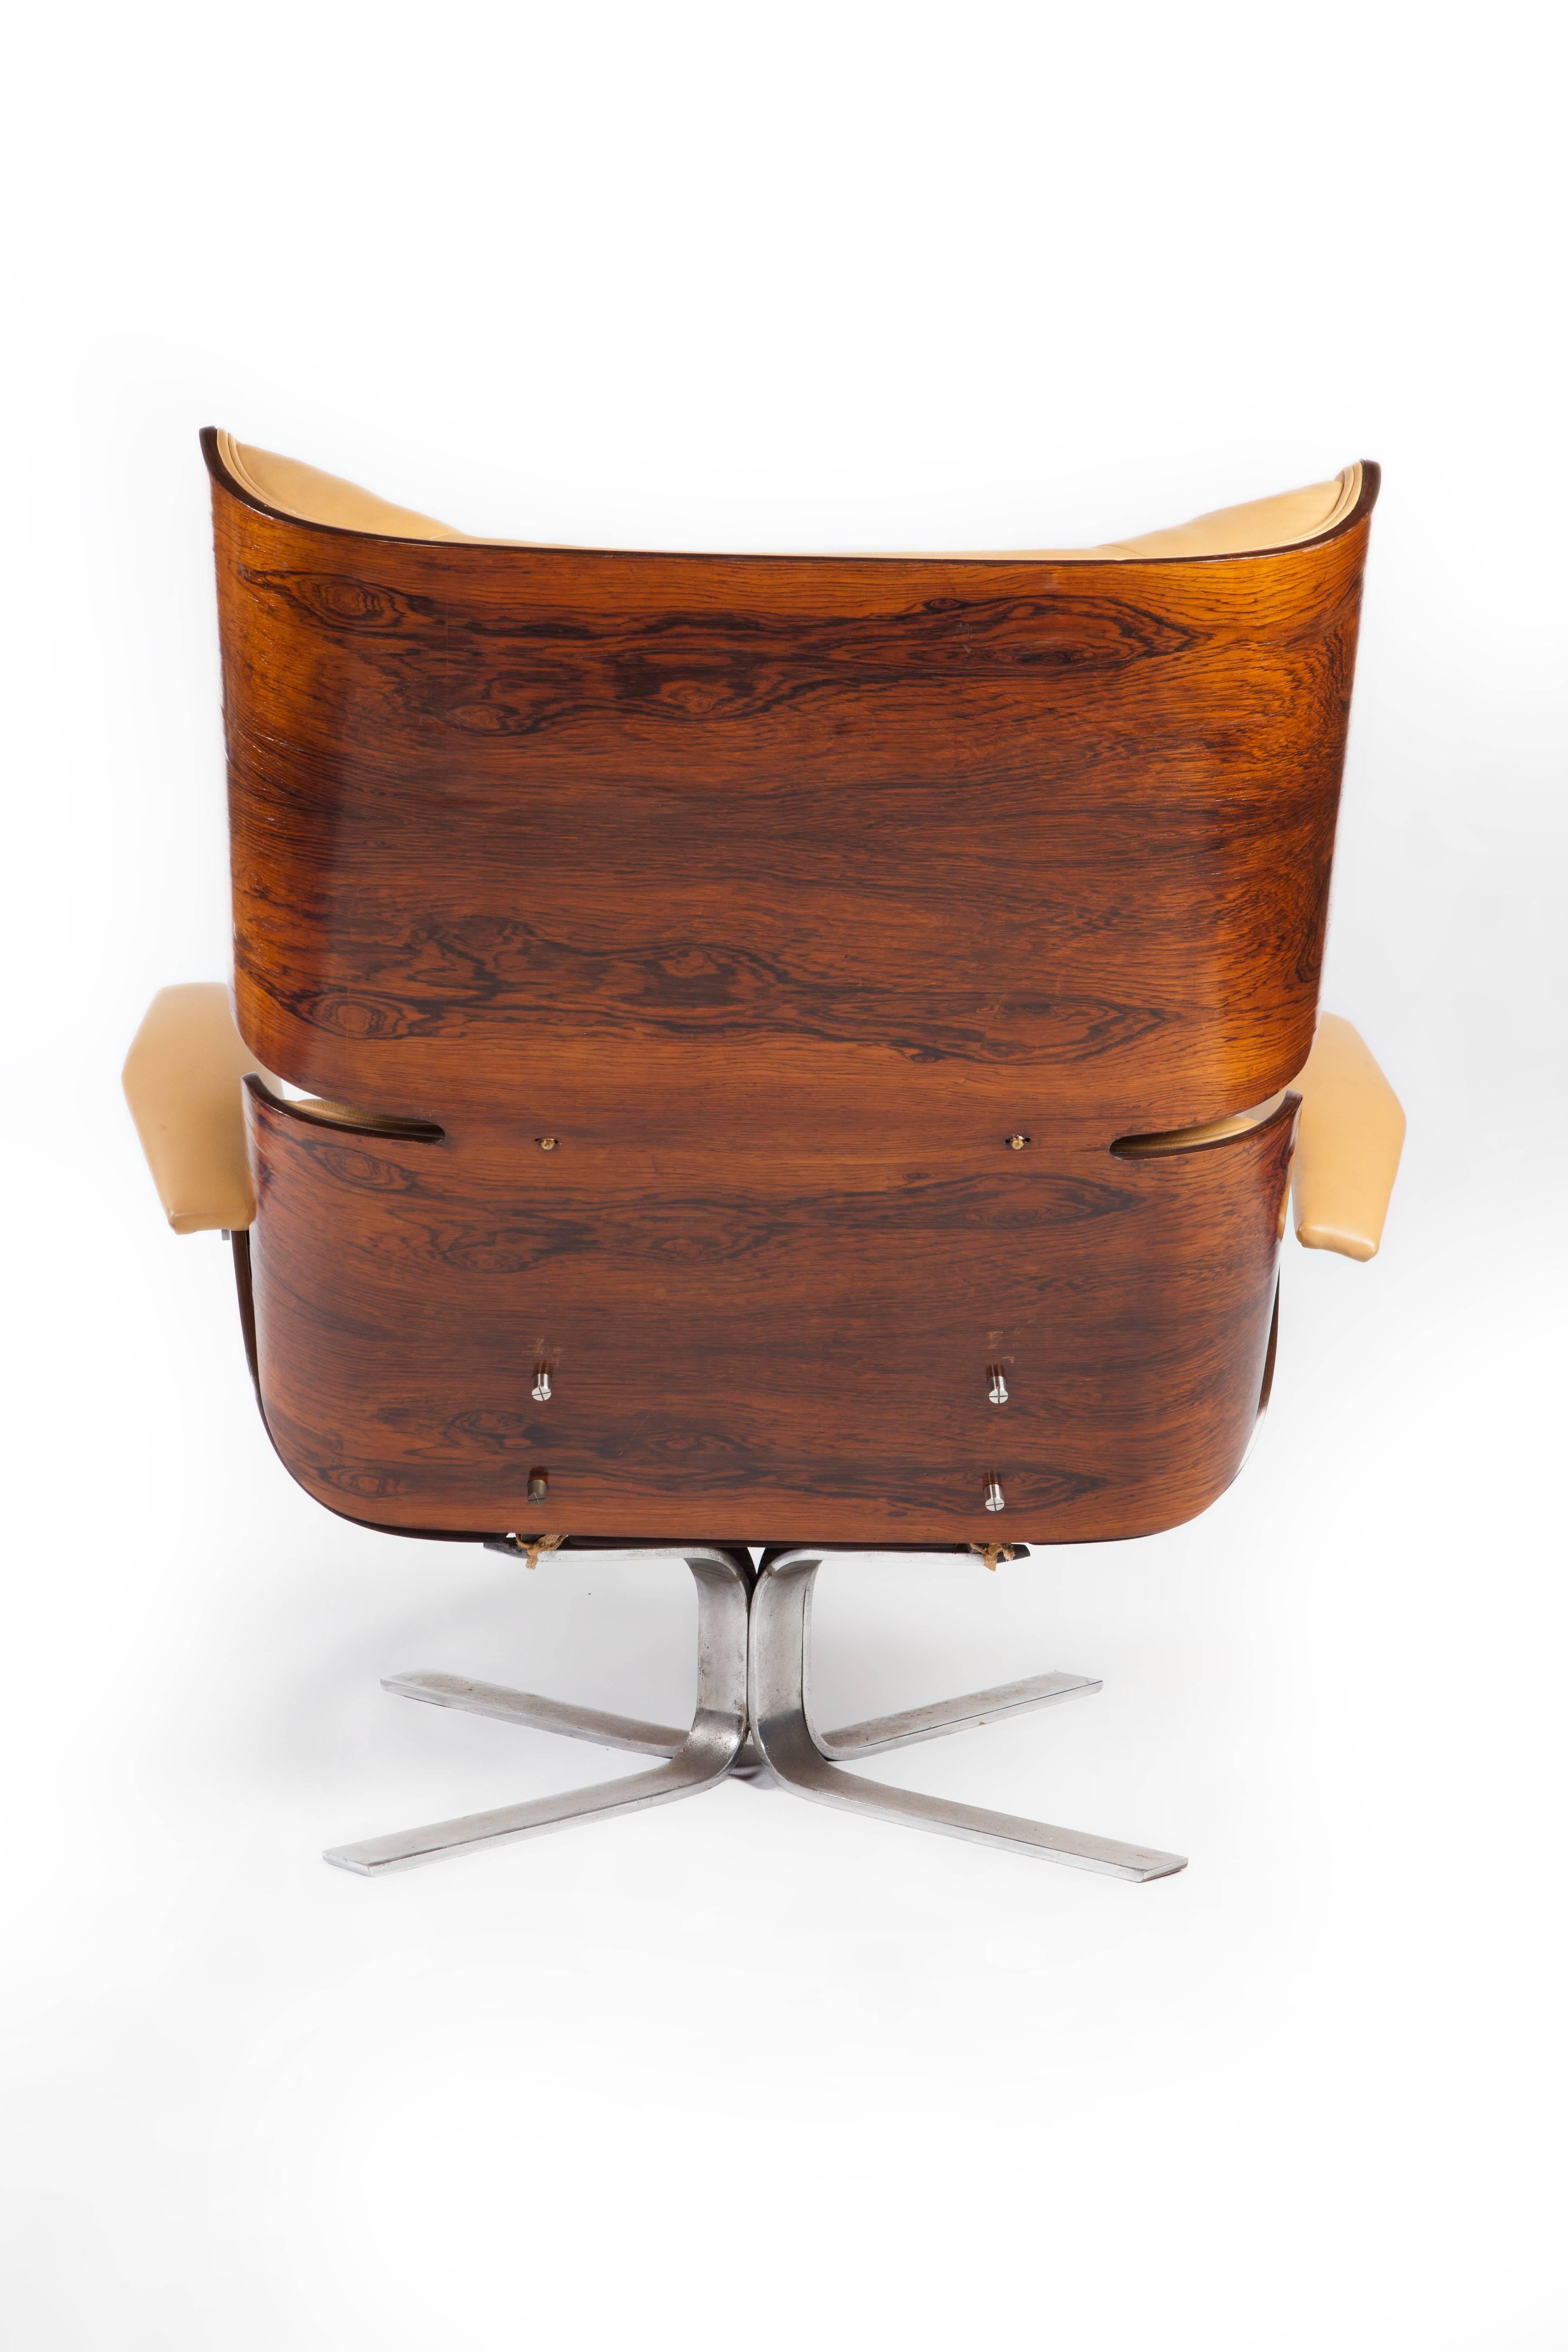 "Paulistana" Brazilian modern rosewood (Jacaranda) and leather lounge chair and ottoman designed by Jorge Zalszupin.